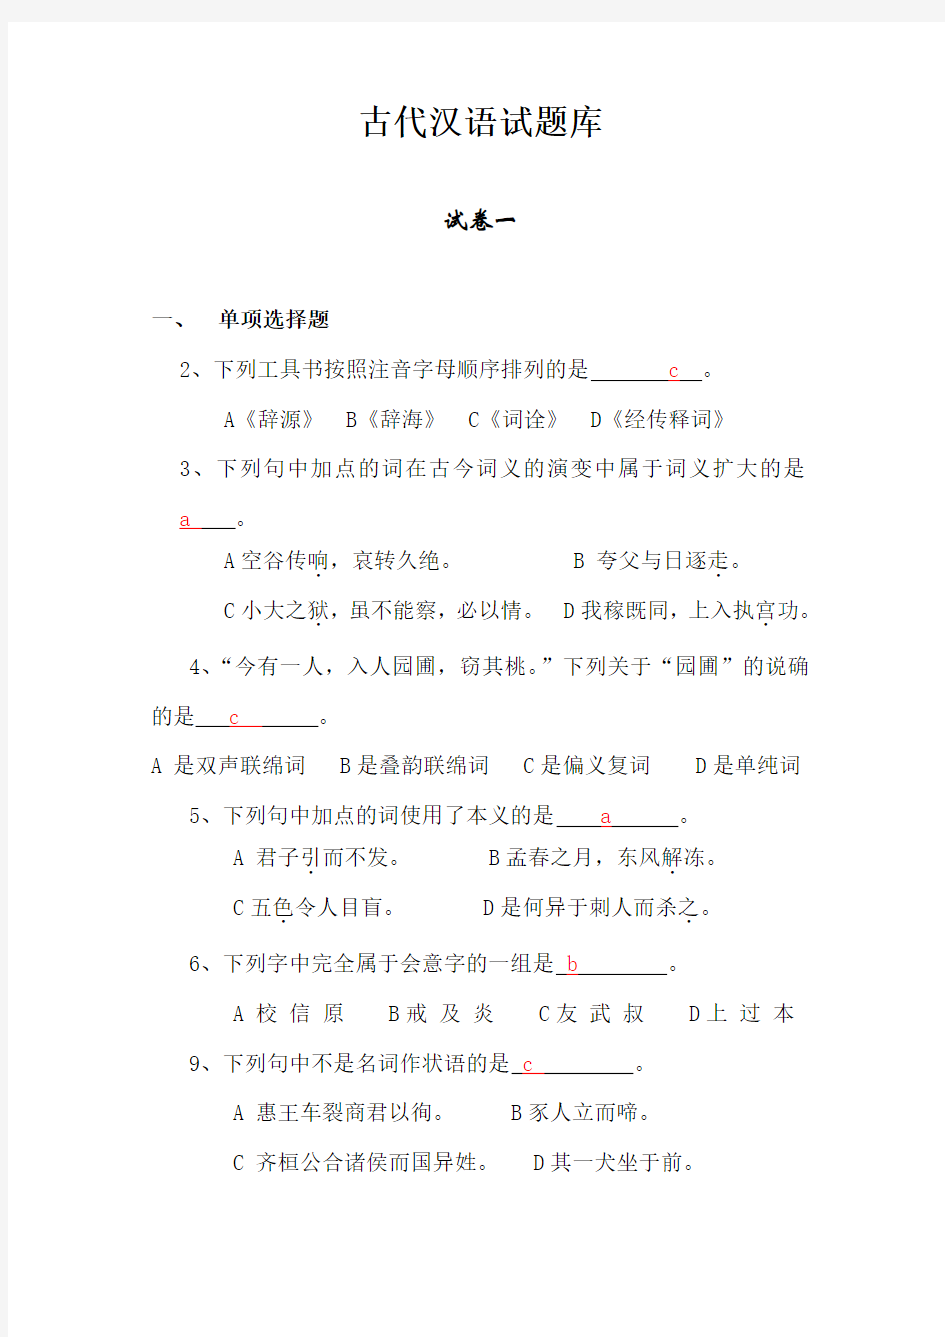 古代汉语试题库完整